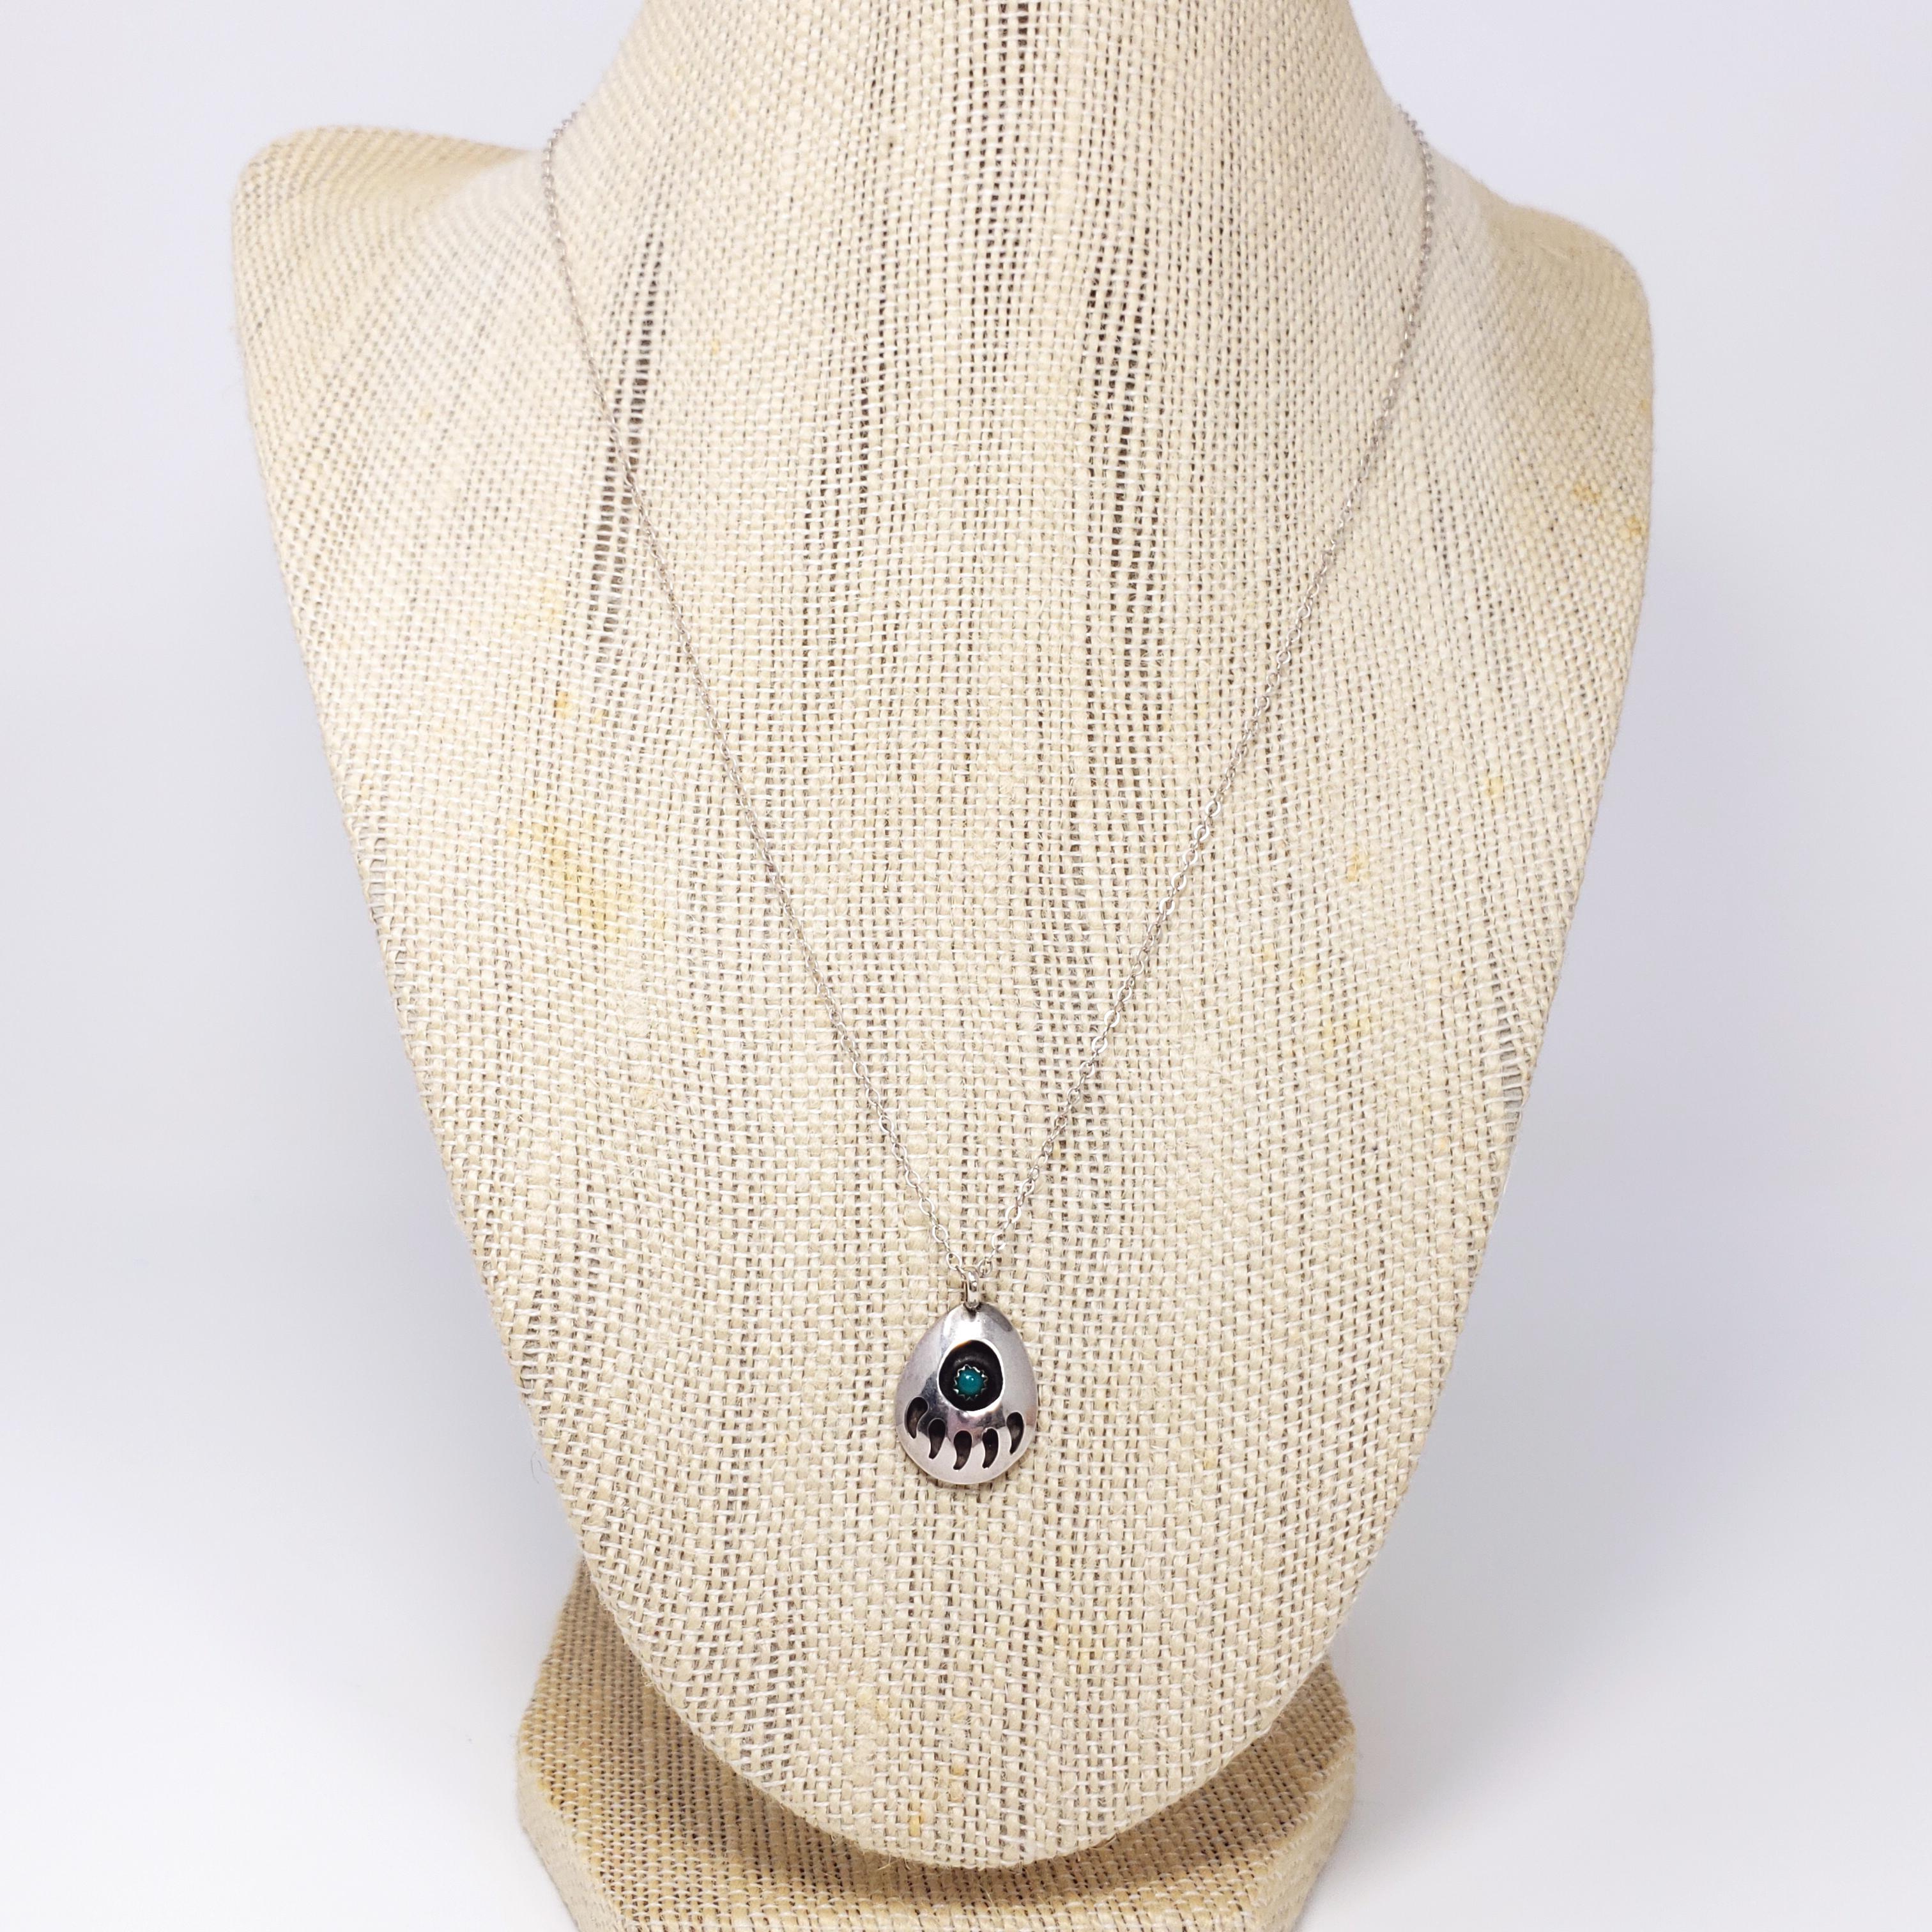 Un collier vintage amérindien en argent sterling. Le pendentif présente un motif de griffe d'ours en relief, accentué par un cabochon de turquoise serti dans une lunette en dents de scie. Excellent artisanat amérindien !

